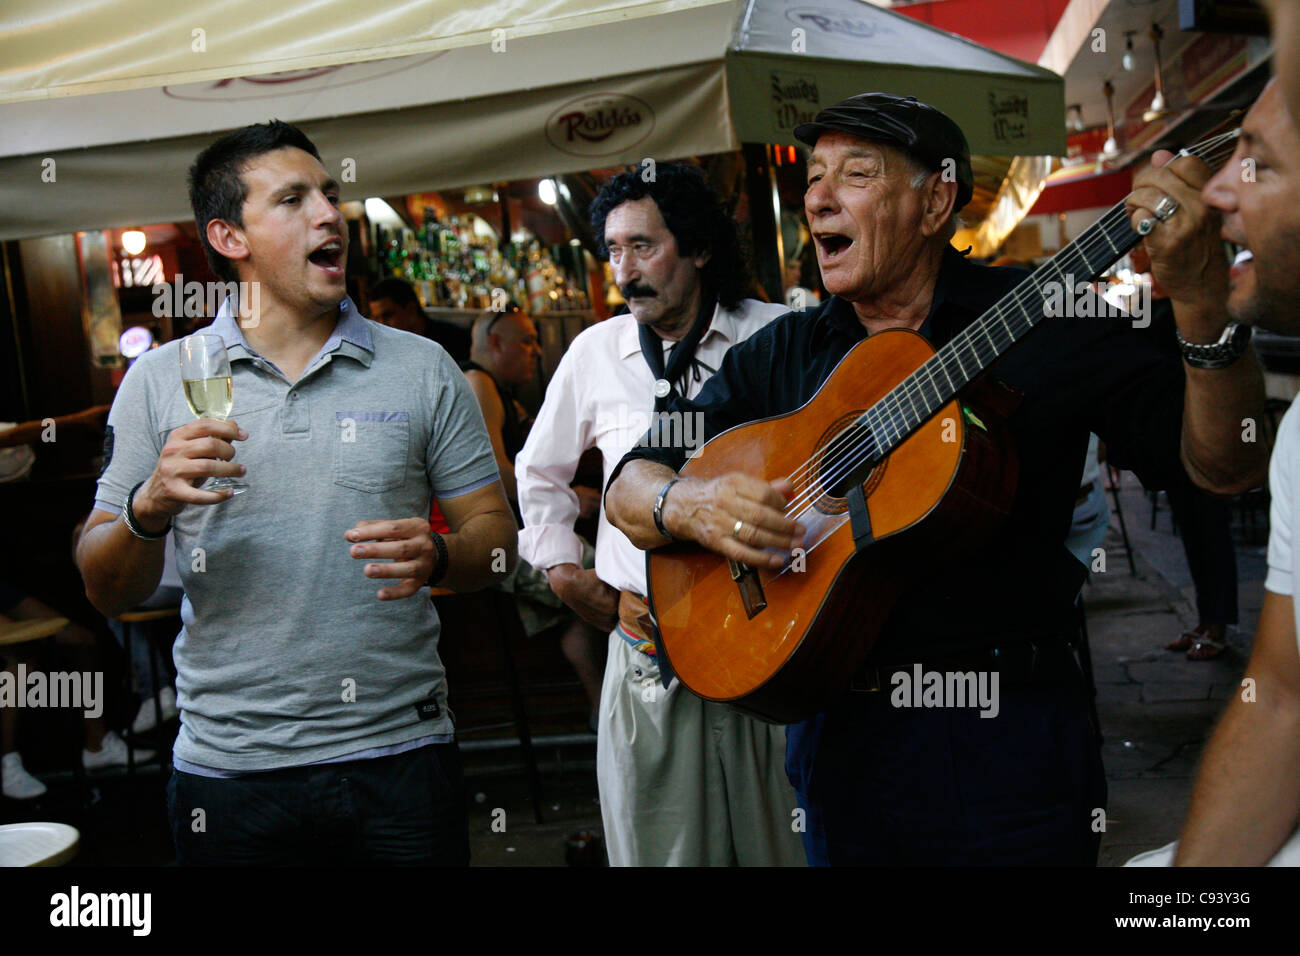 La gente en el Bar Roldos en el Mercado del Puerto, Montevideo, Uruguay. Foto de stock